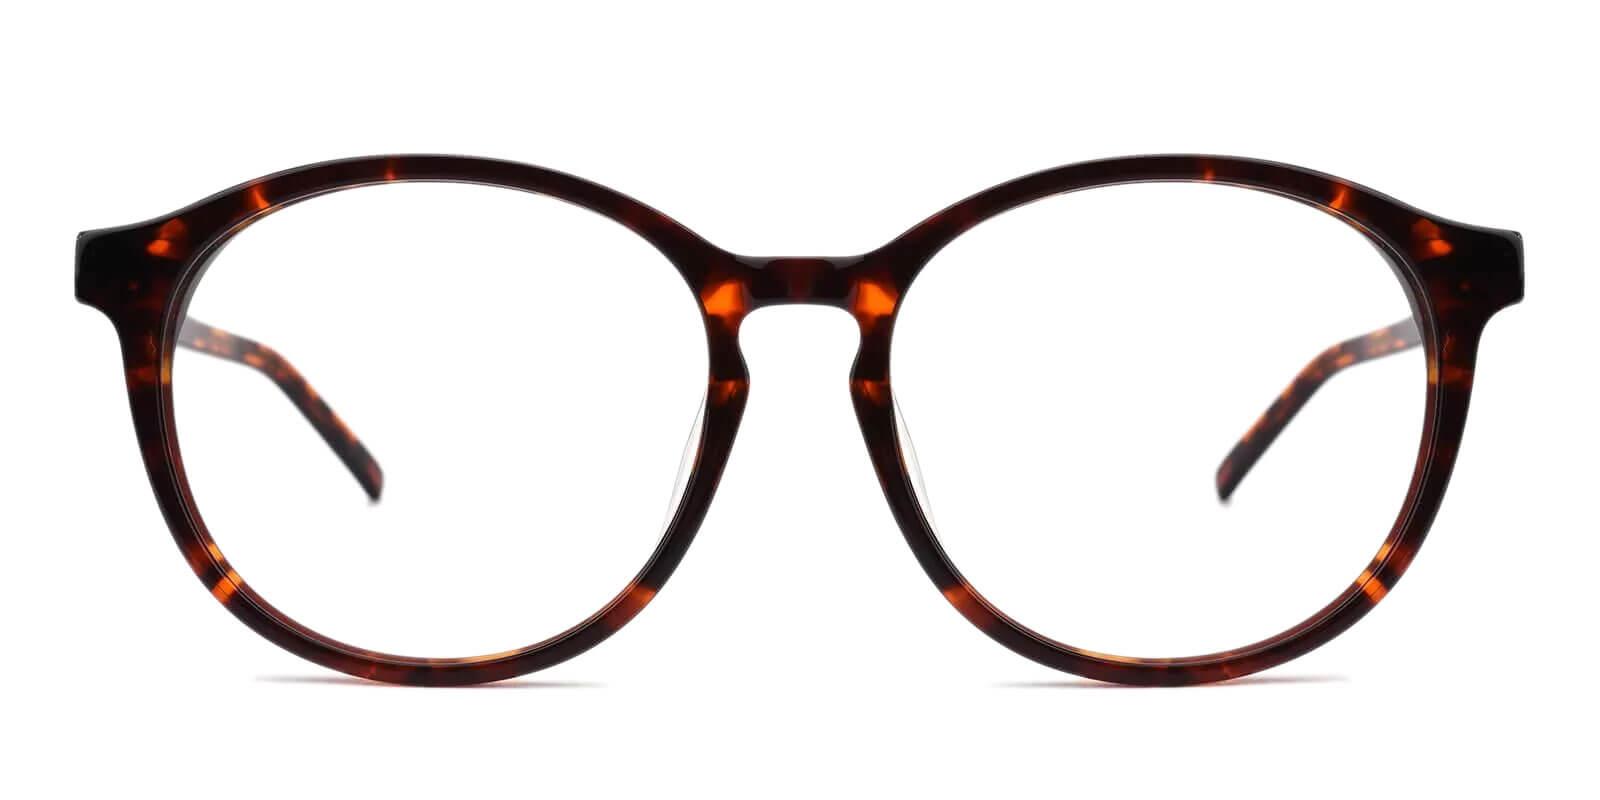 Wasco Tortoise Acetate Eyeglasses , UniversalBridgeFit Frames from ABBE Glasses